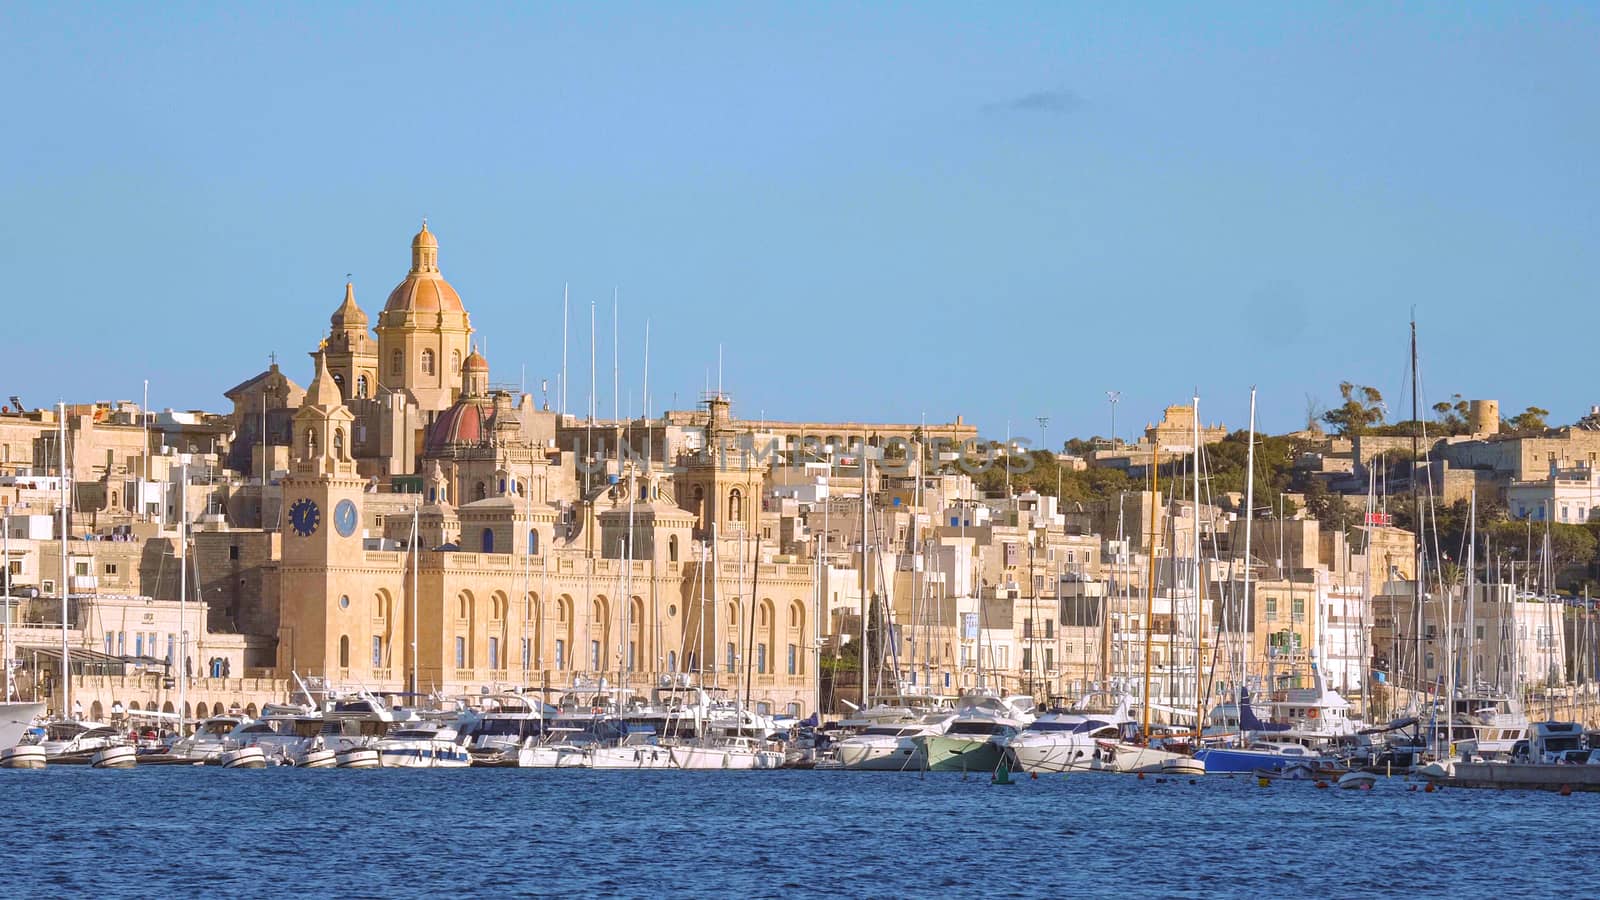 Skyline of Valletta from Sliema harbour by Lattwein